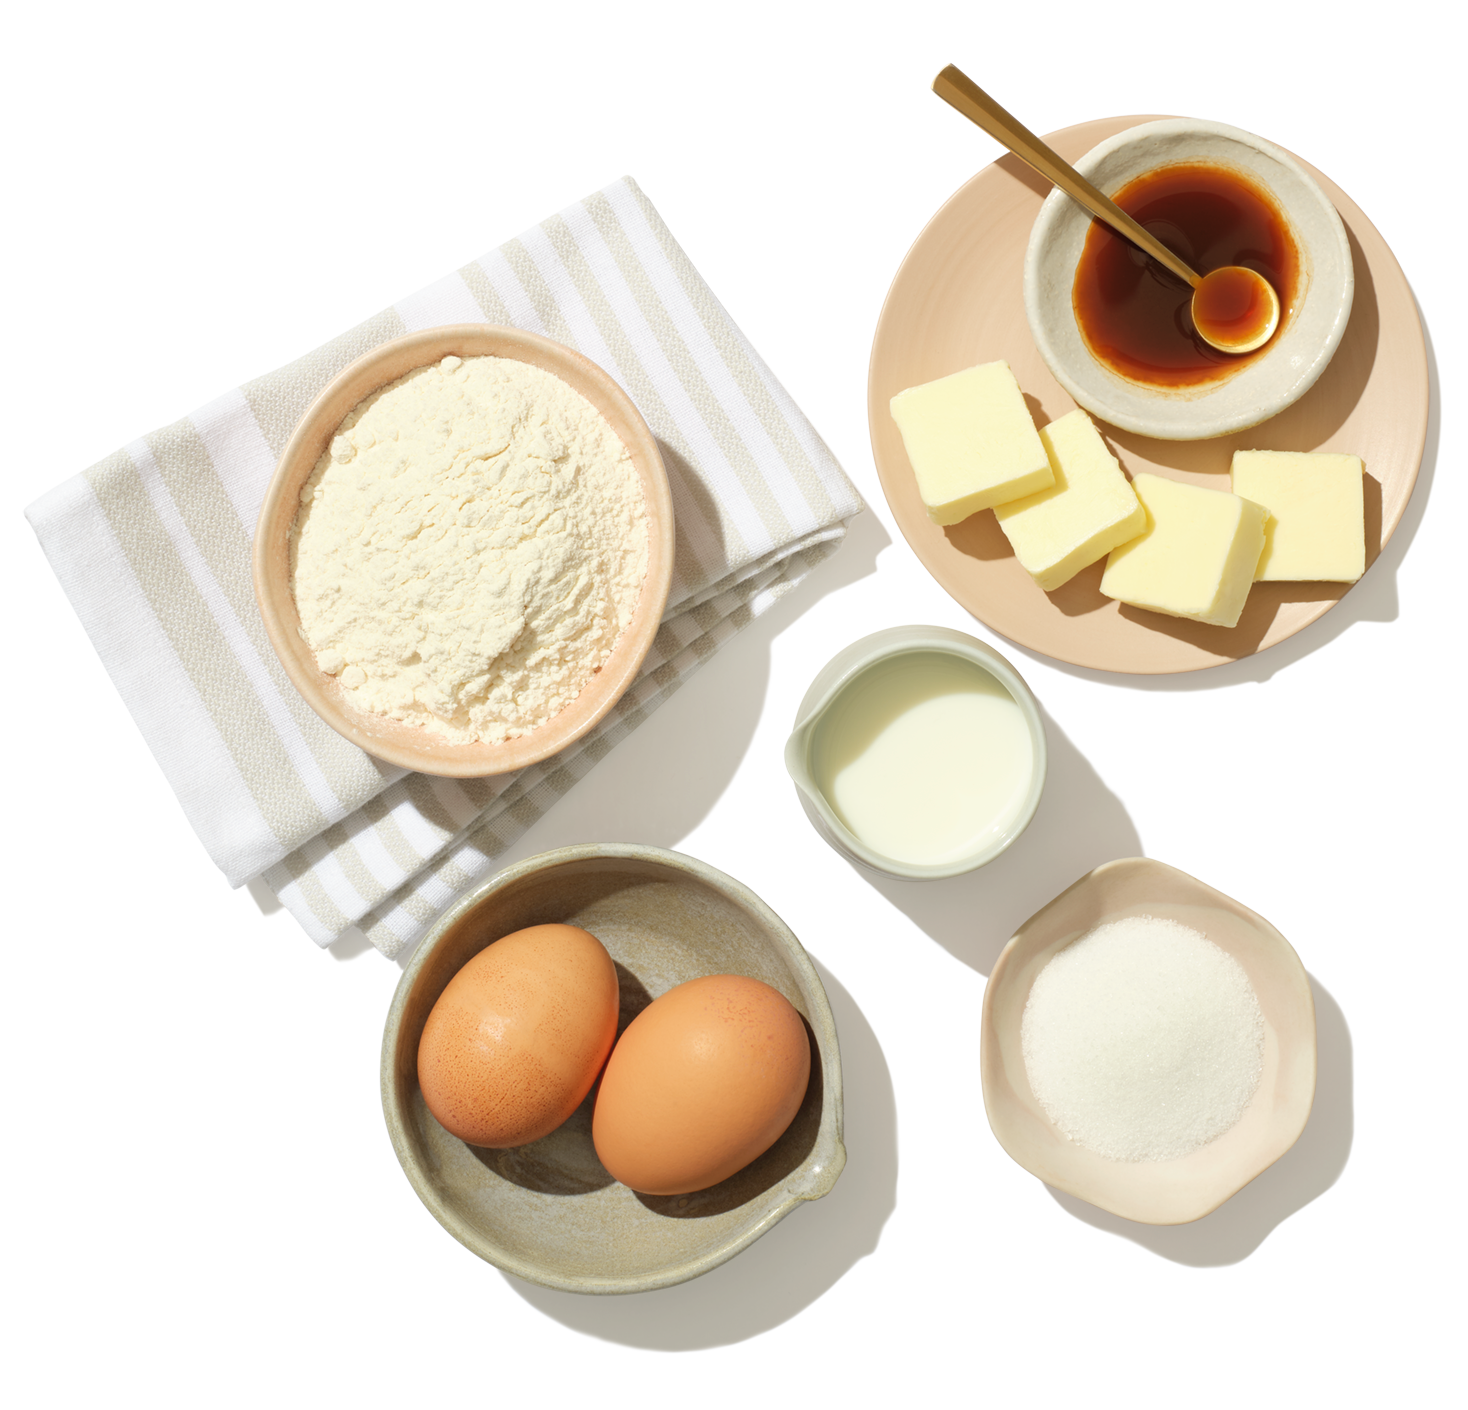 Plusieurs bols avec des ingrédients prémesurés reposent sur une table, y compris des œufs, du sucre, du beurre, de la farine et du lait.